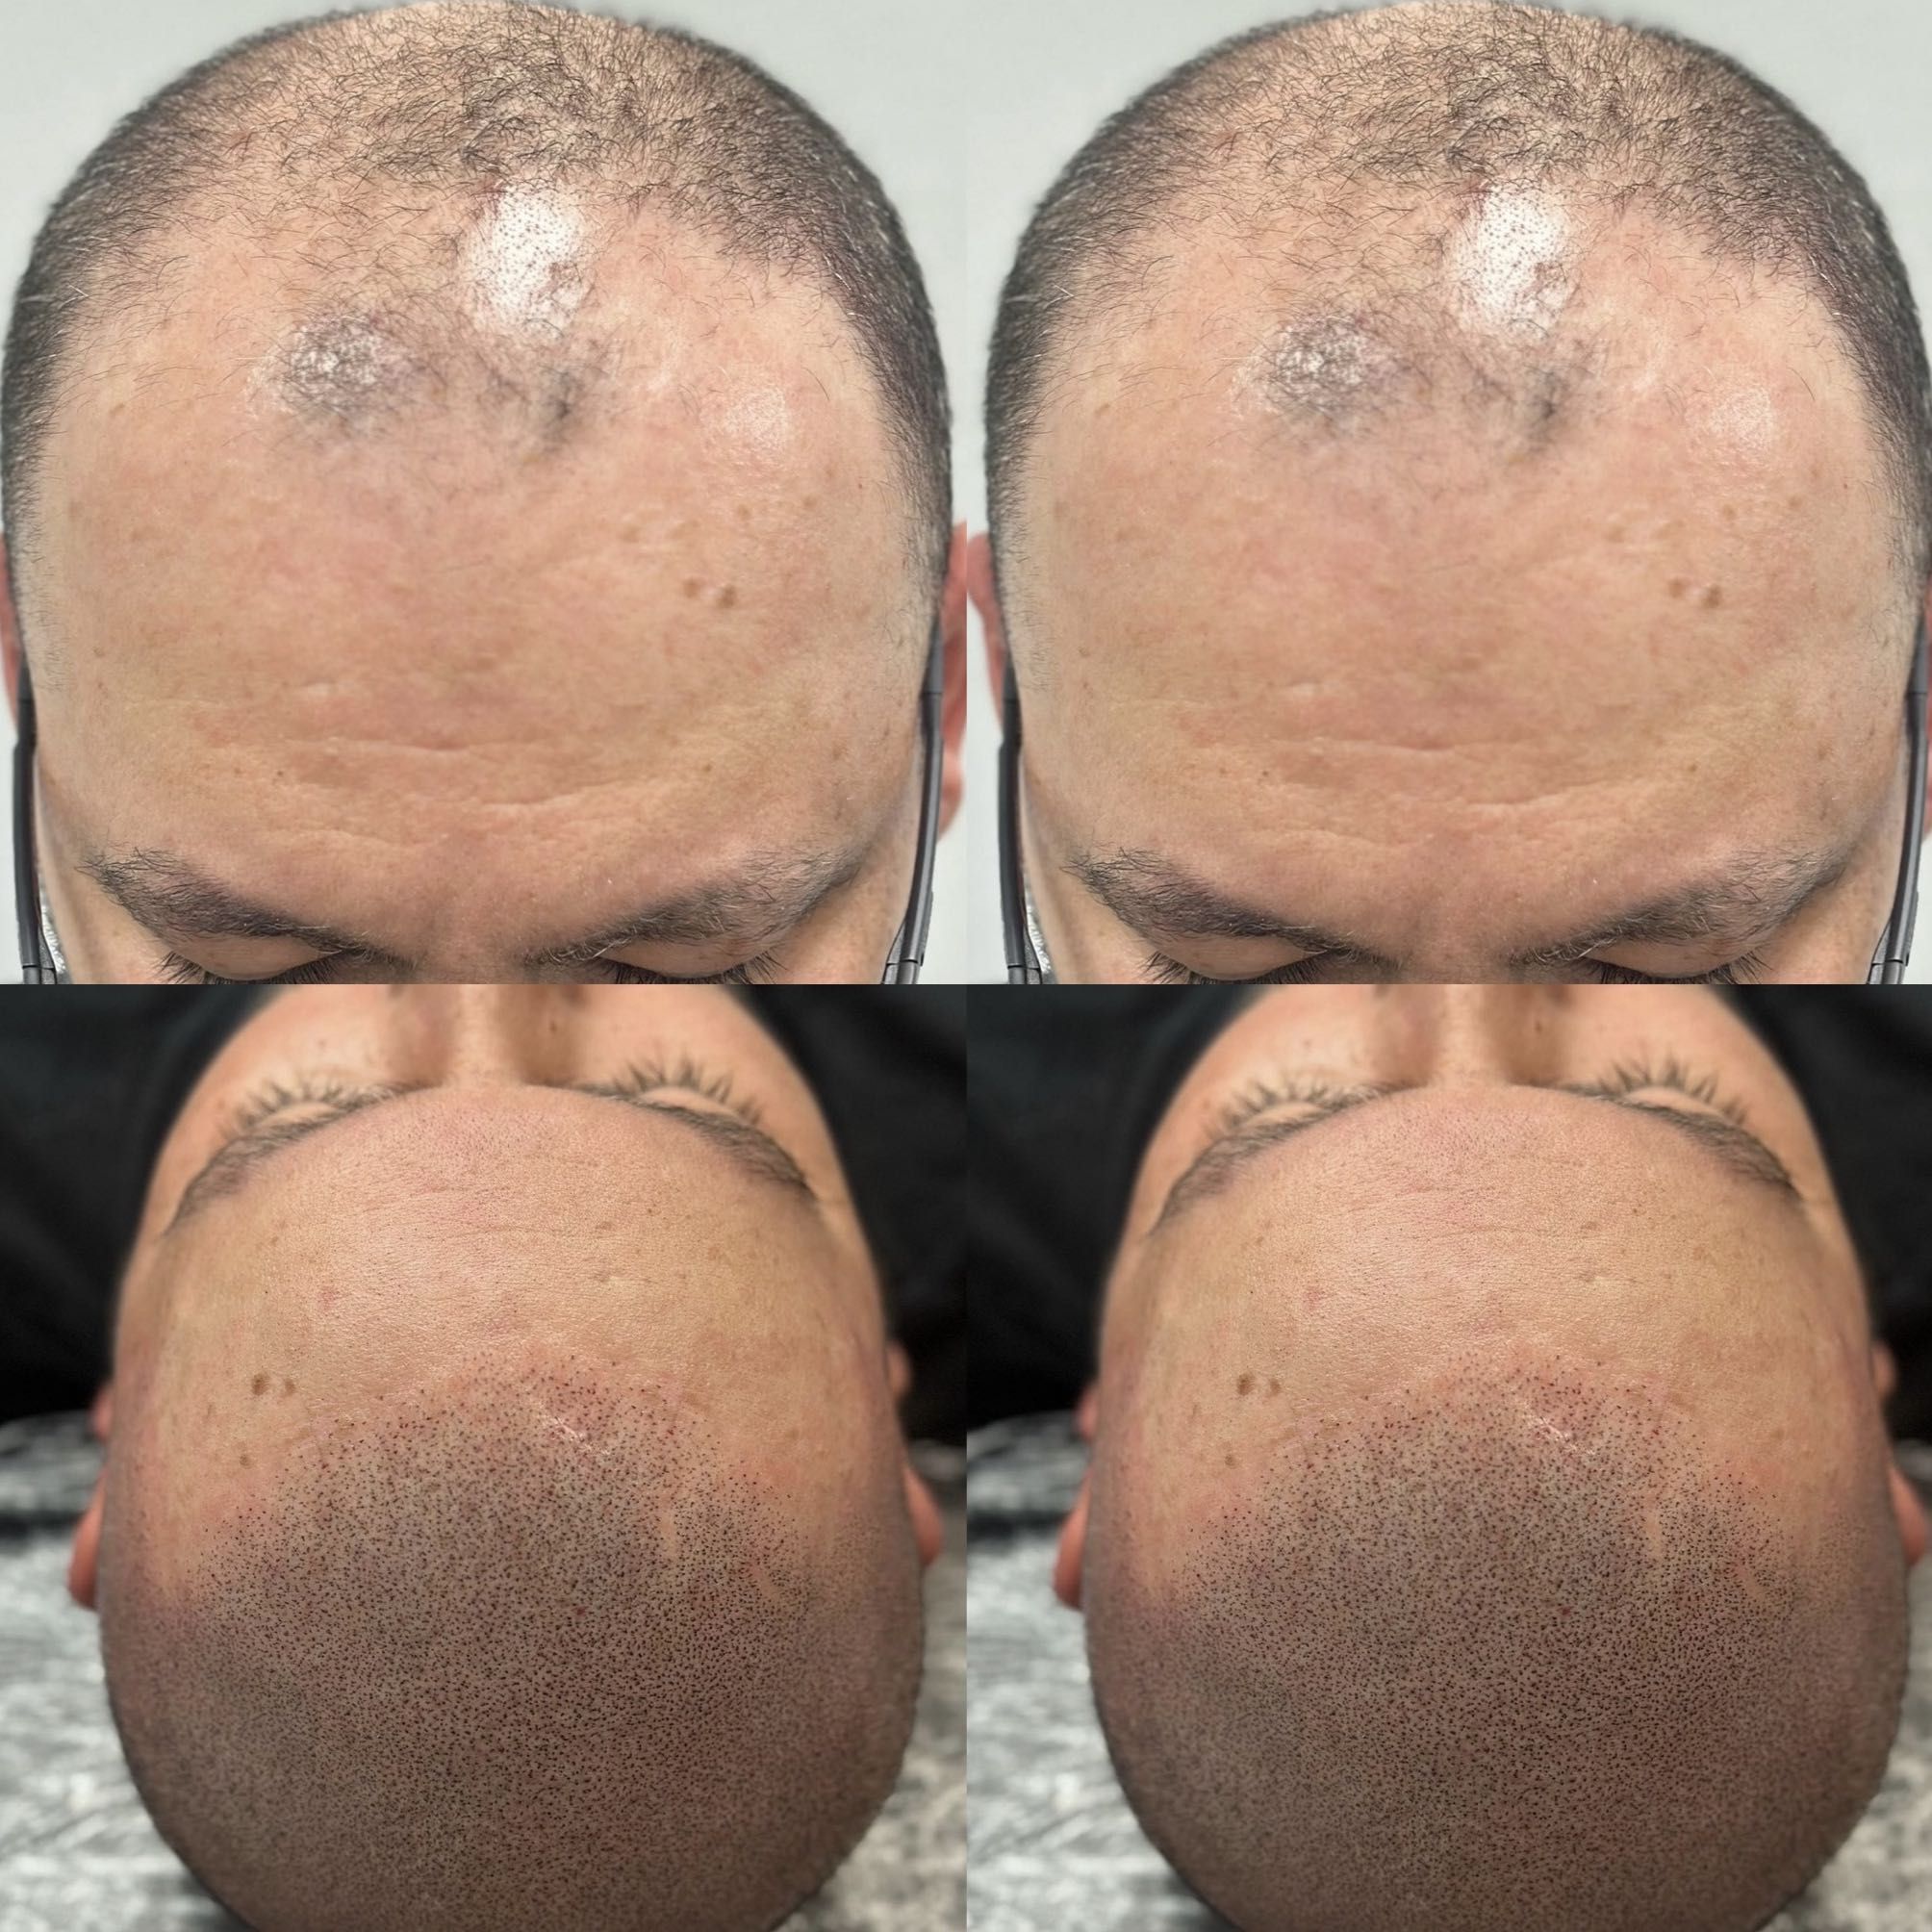 Portfolio usługi Mikropigmentacja skóry głowy